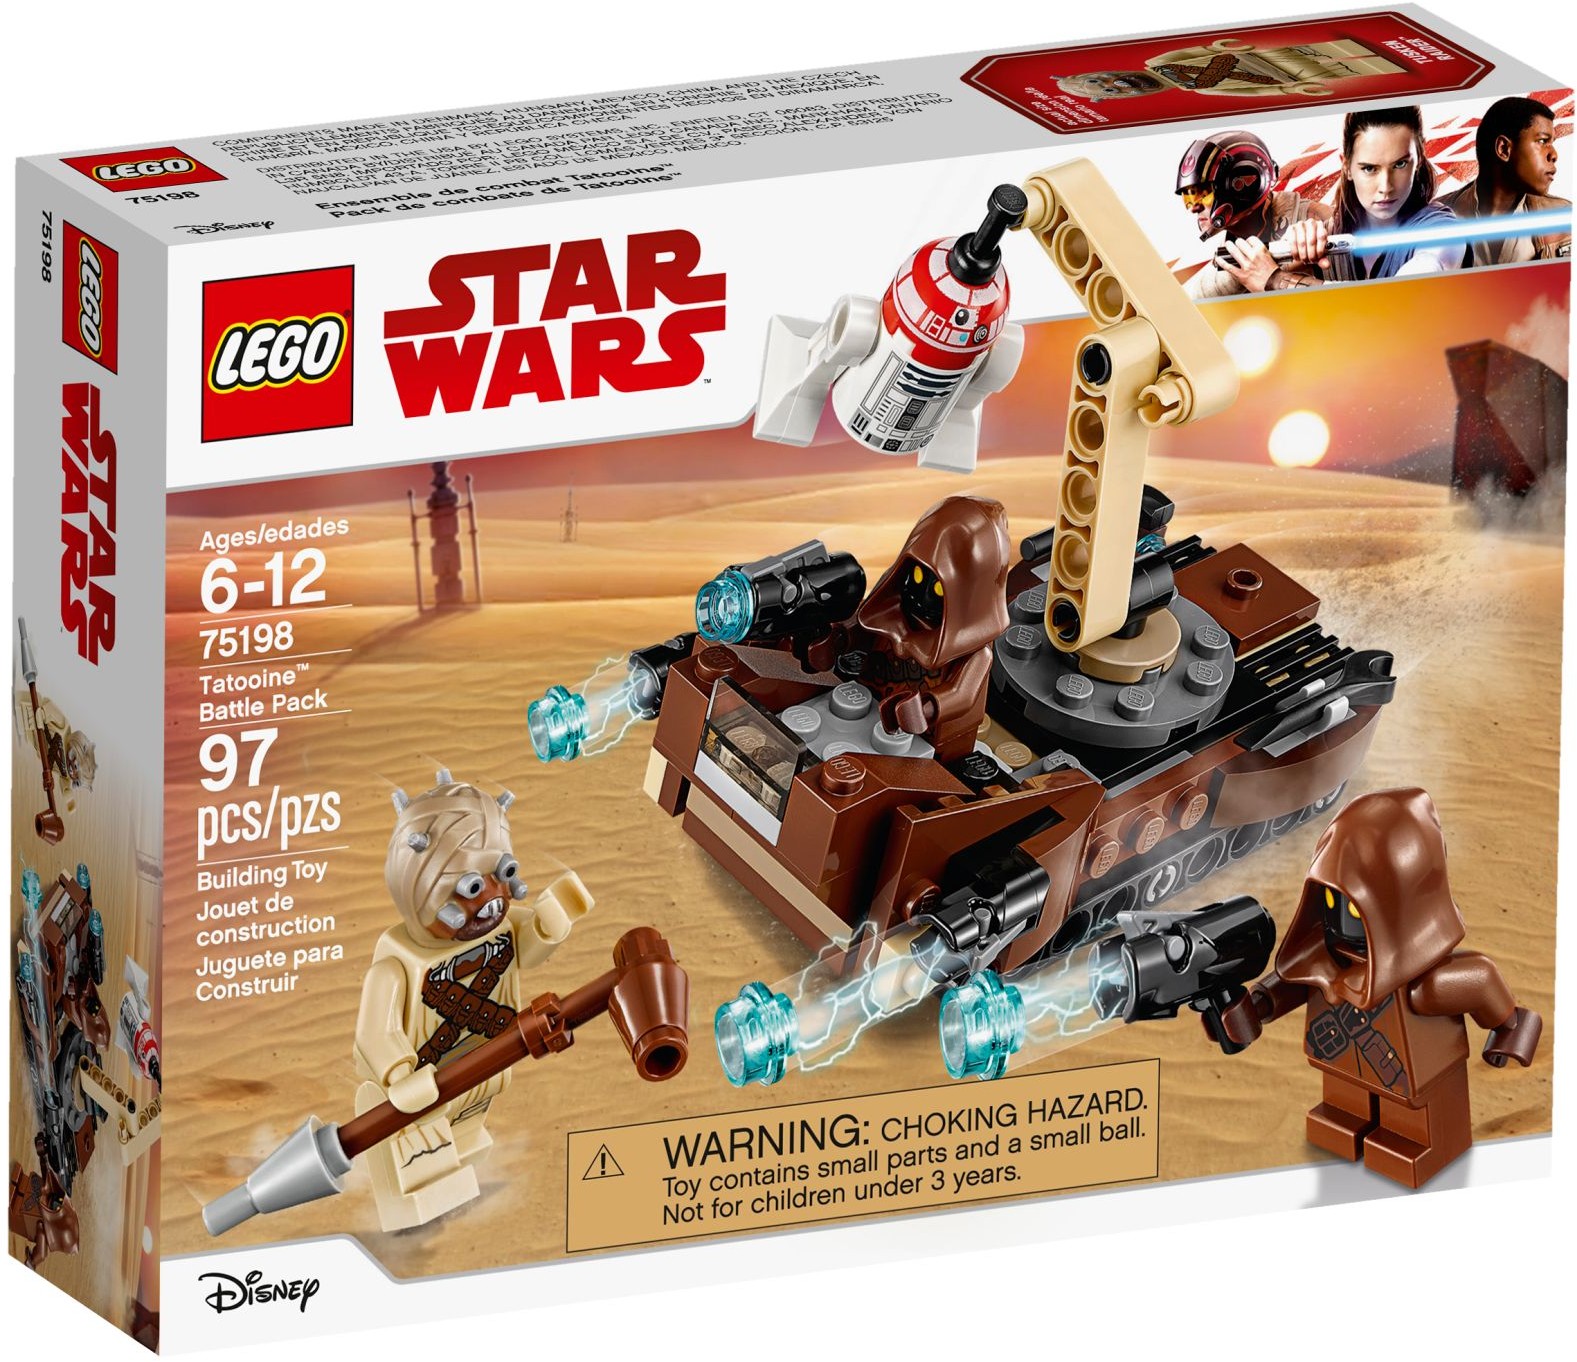 LEGO STAR WARS 75198 TATOOINE JAWAS TUSKEN R5-D4 PACK BRAND NEW OOP RETIRED SET 